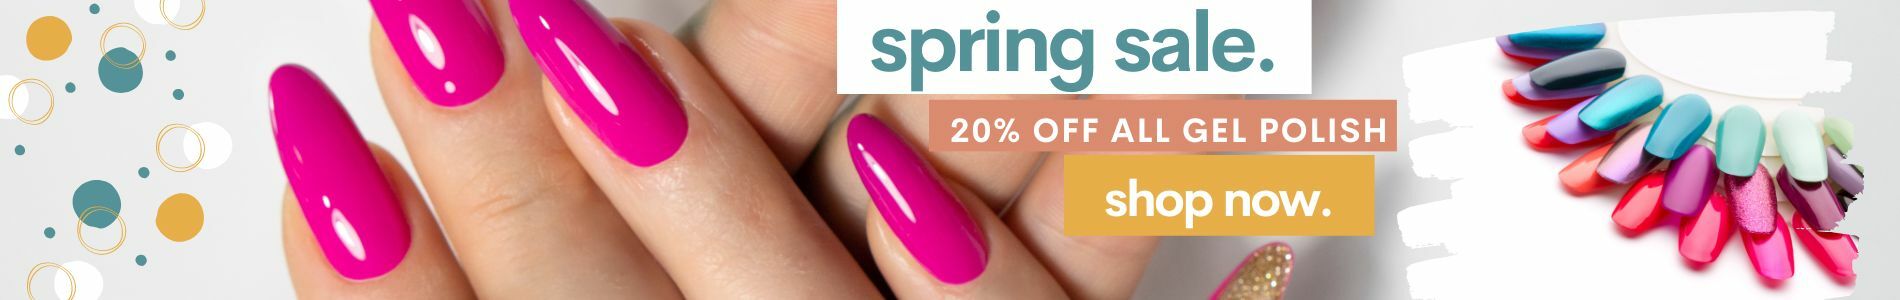 orange-teal-pink-spring-sale-banner-ecommerce-website-1900-x-300-px-.jpg